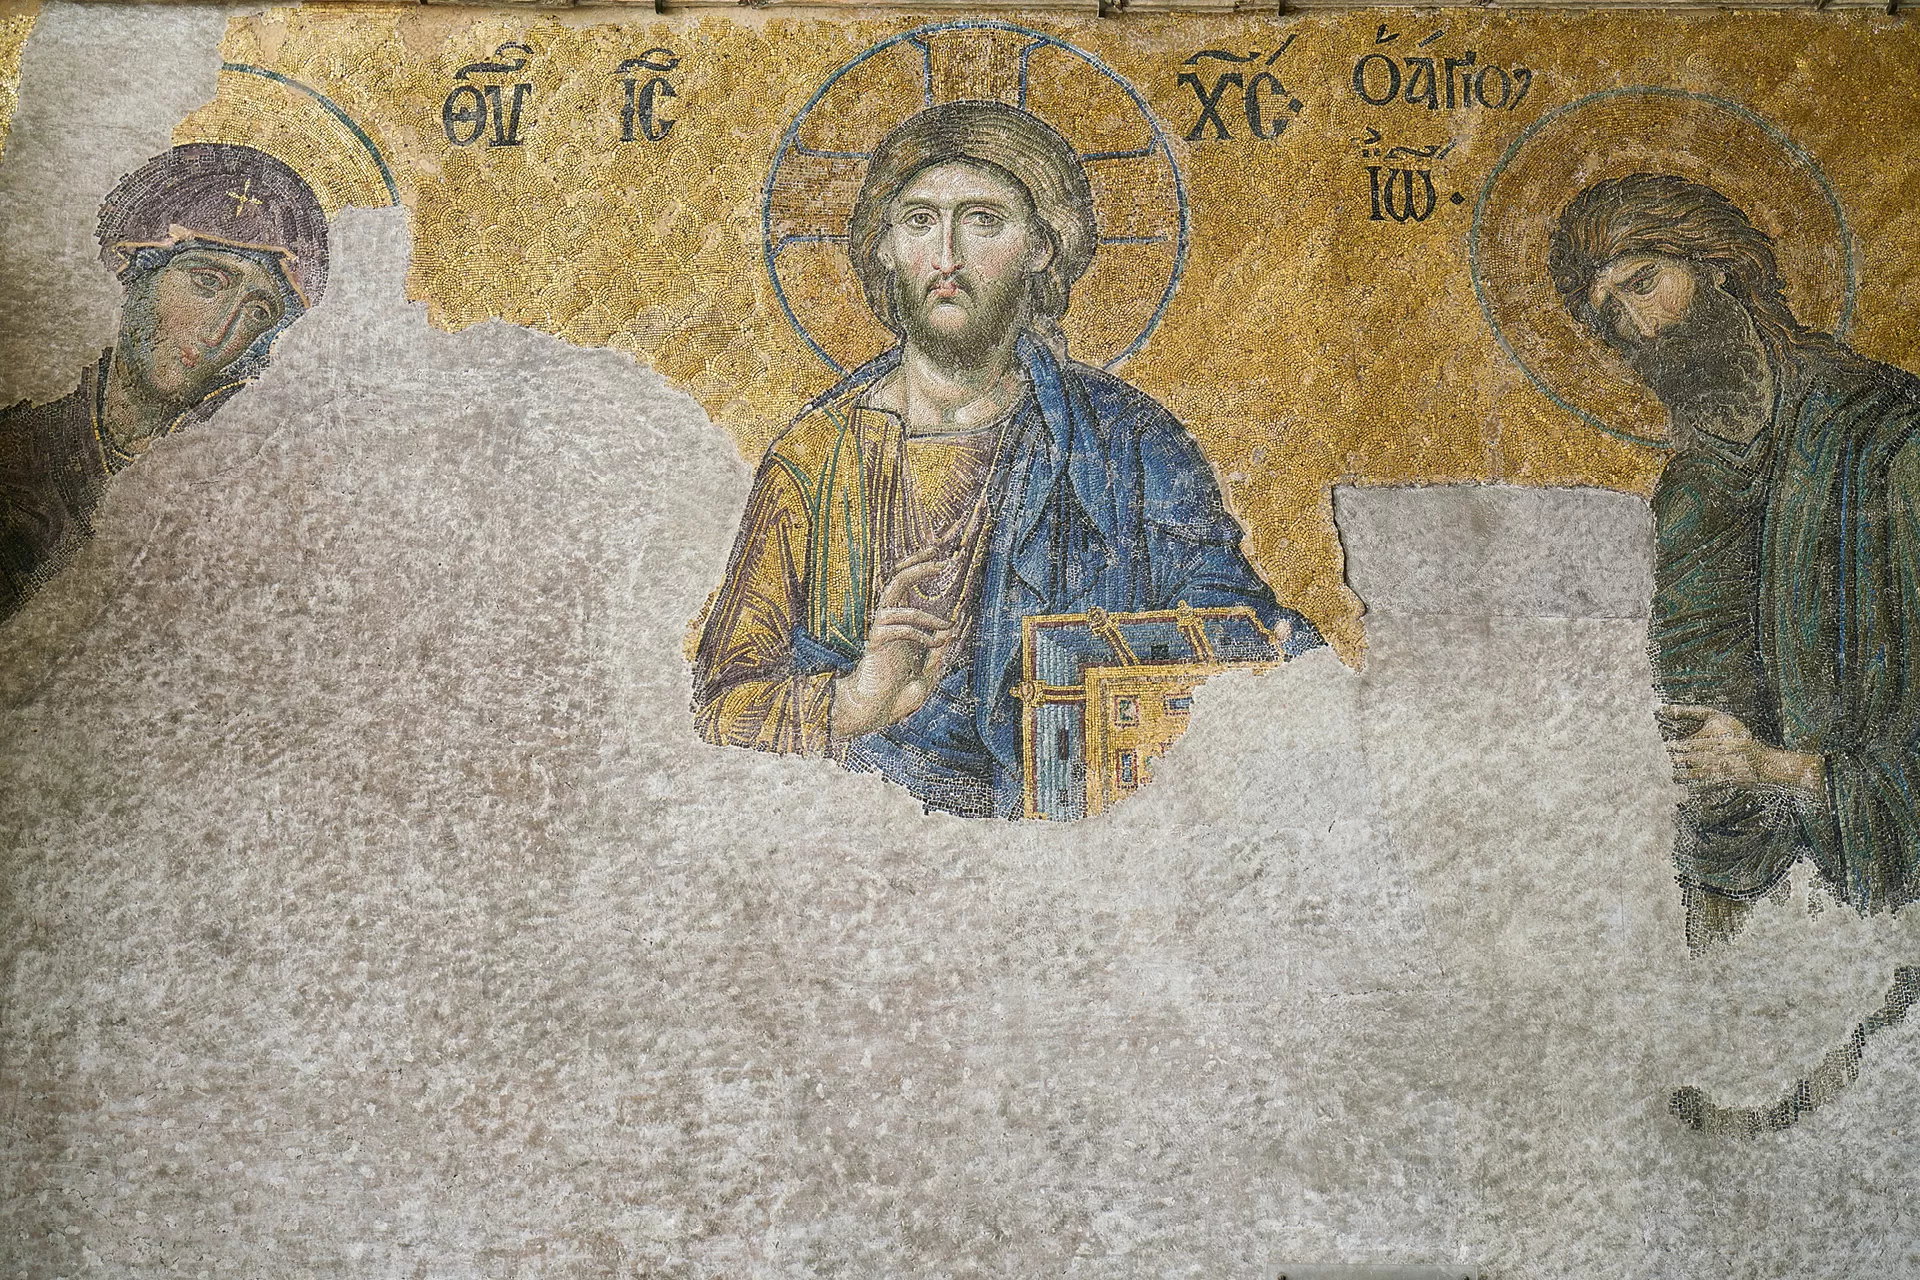 Wandmosaik von Christus mit der Jungfrau Maria und Johannes dem Täufer, bei welchem im unteren Bildteil die Mosaiksteine fehlen. Ca. 1261, Hagia Sophia, Istanbul